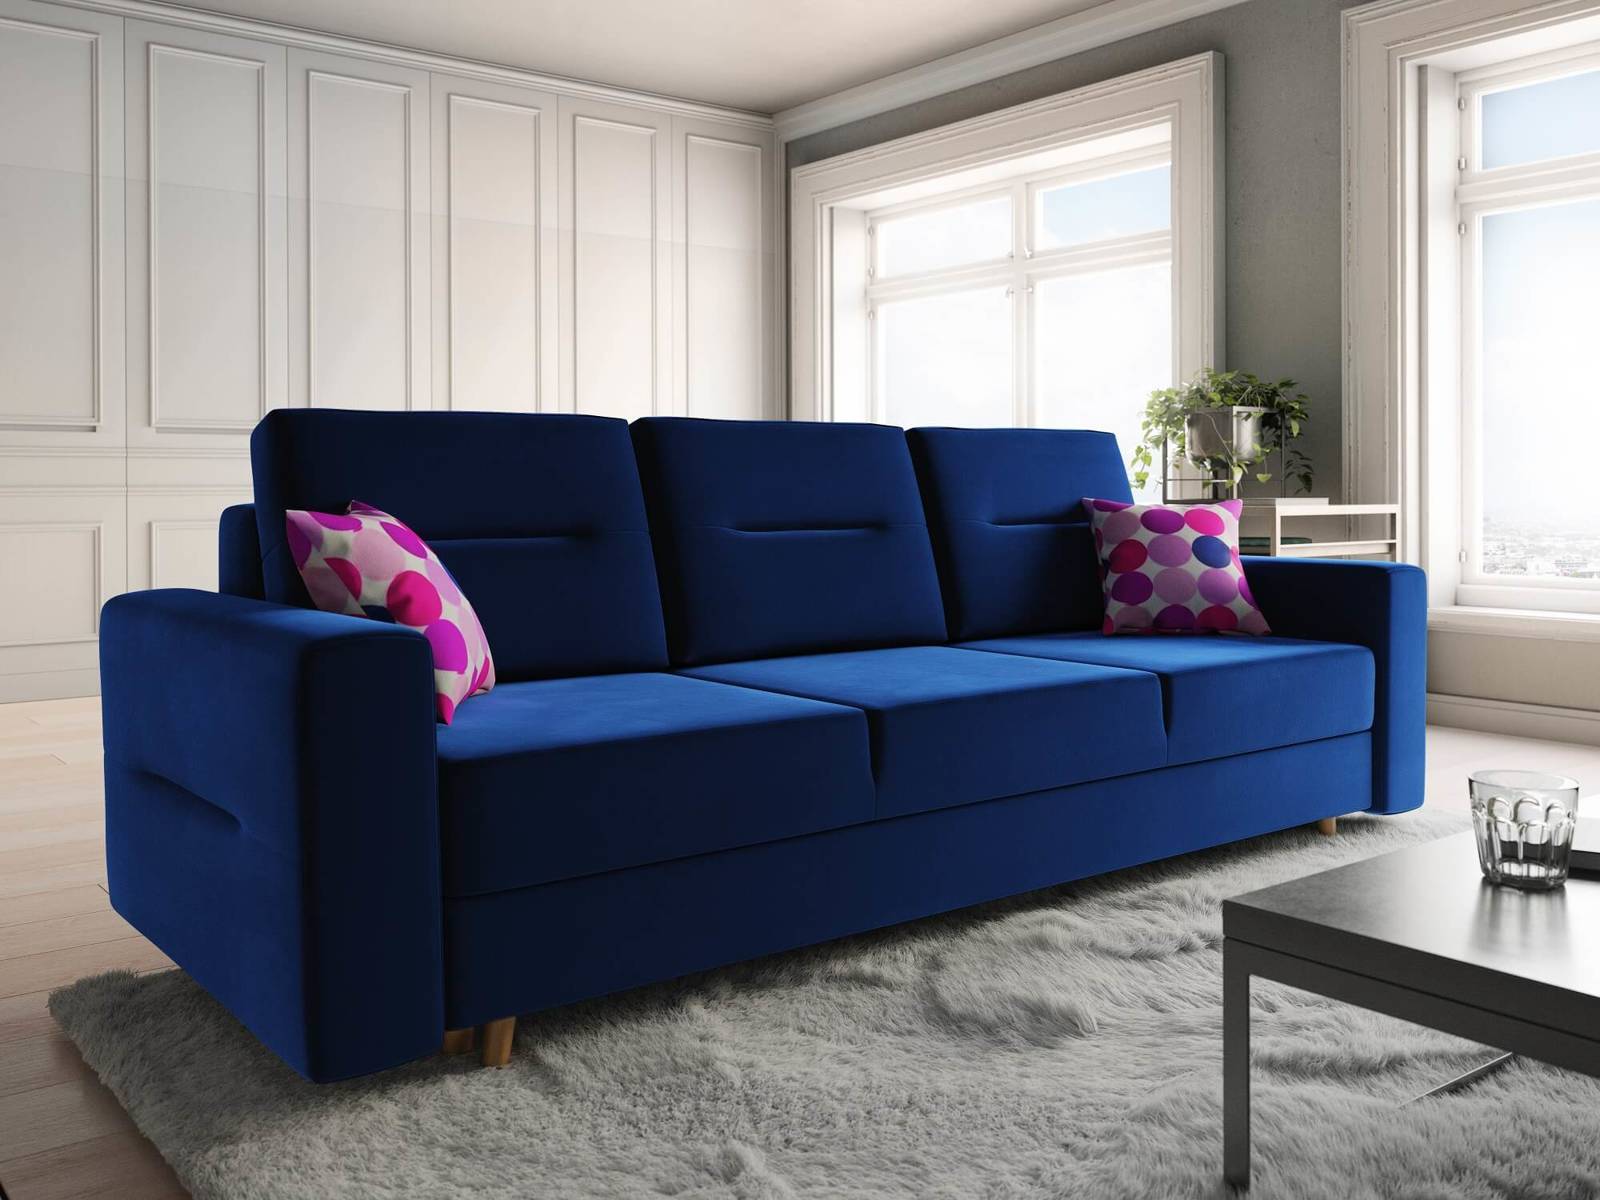 Sofa rozkładana Bristol do salonu lub pokoju dziennego w kolorze granatowym